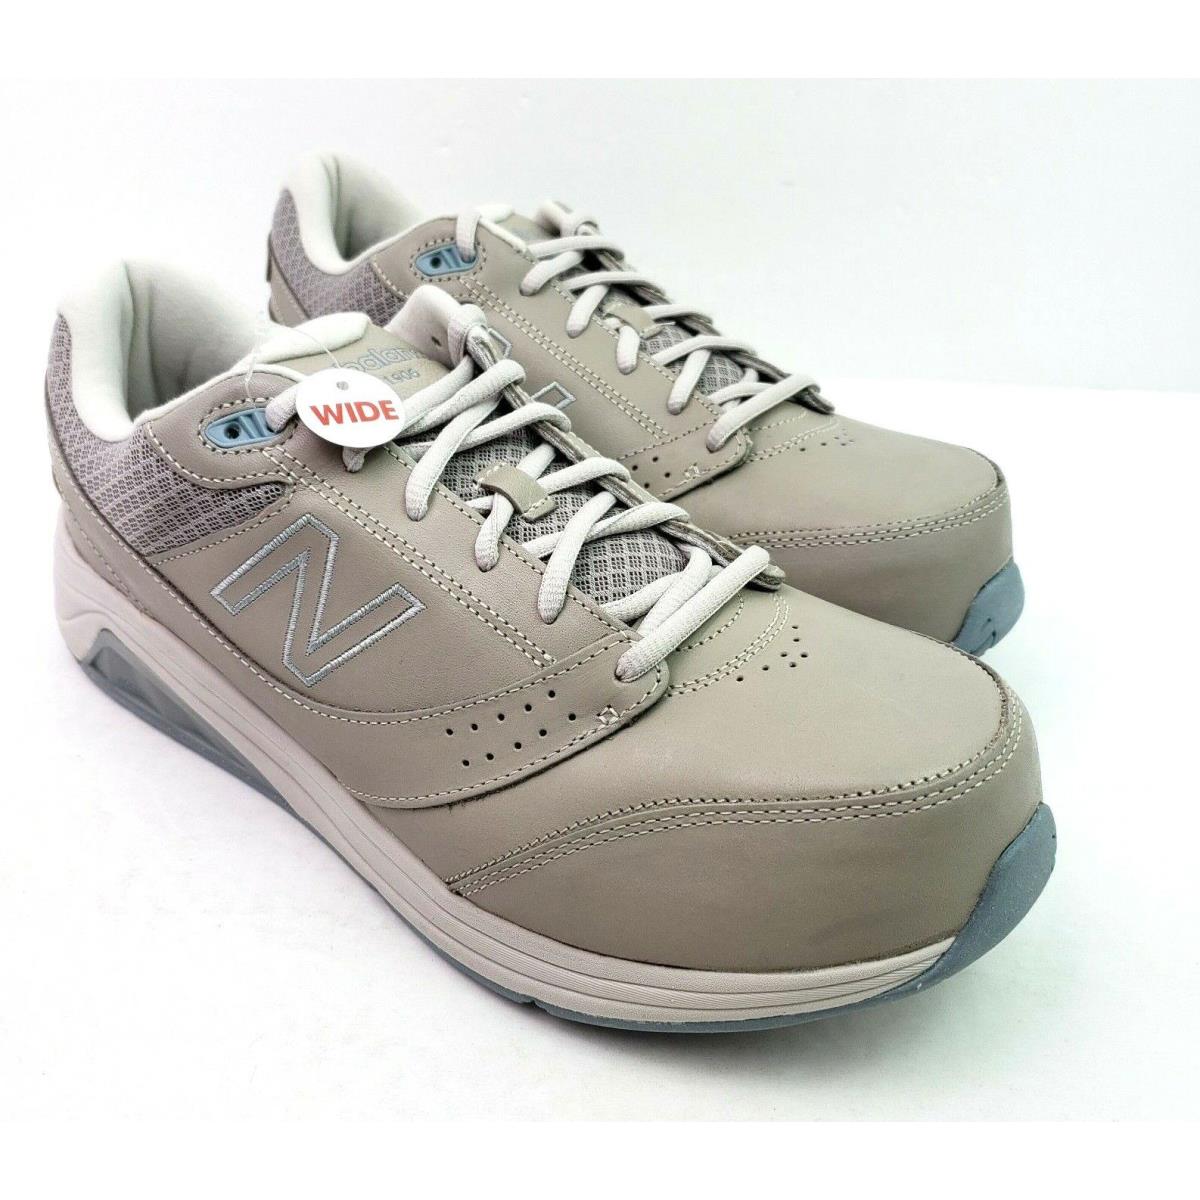 New Balance Walking Marche Womens Size 13 2E Beige Lace Up Sneaker Shoes WW928GR